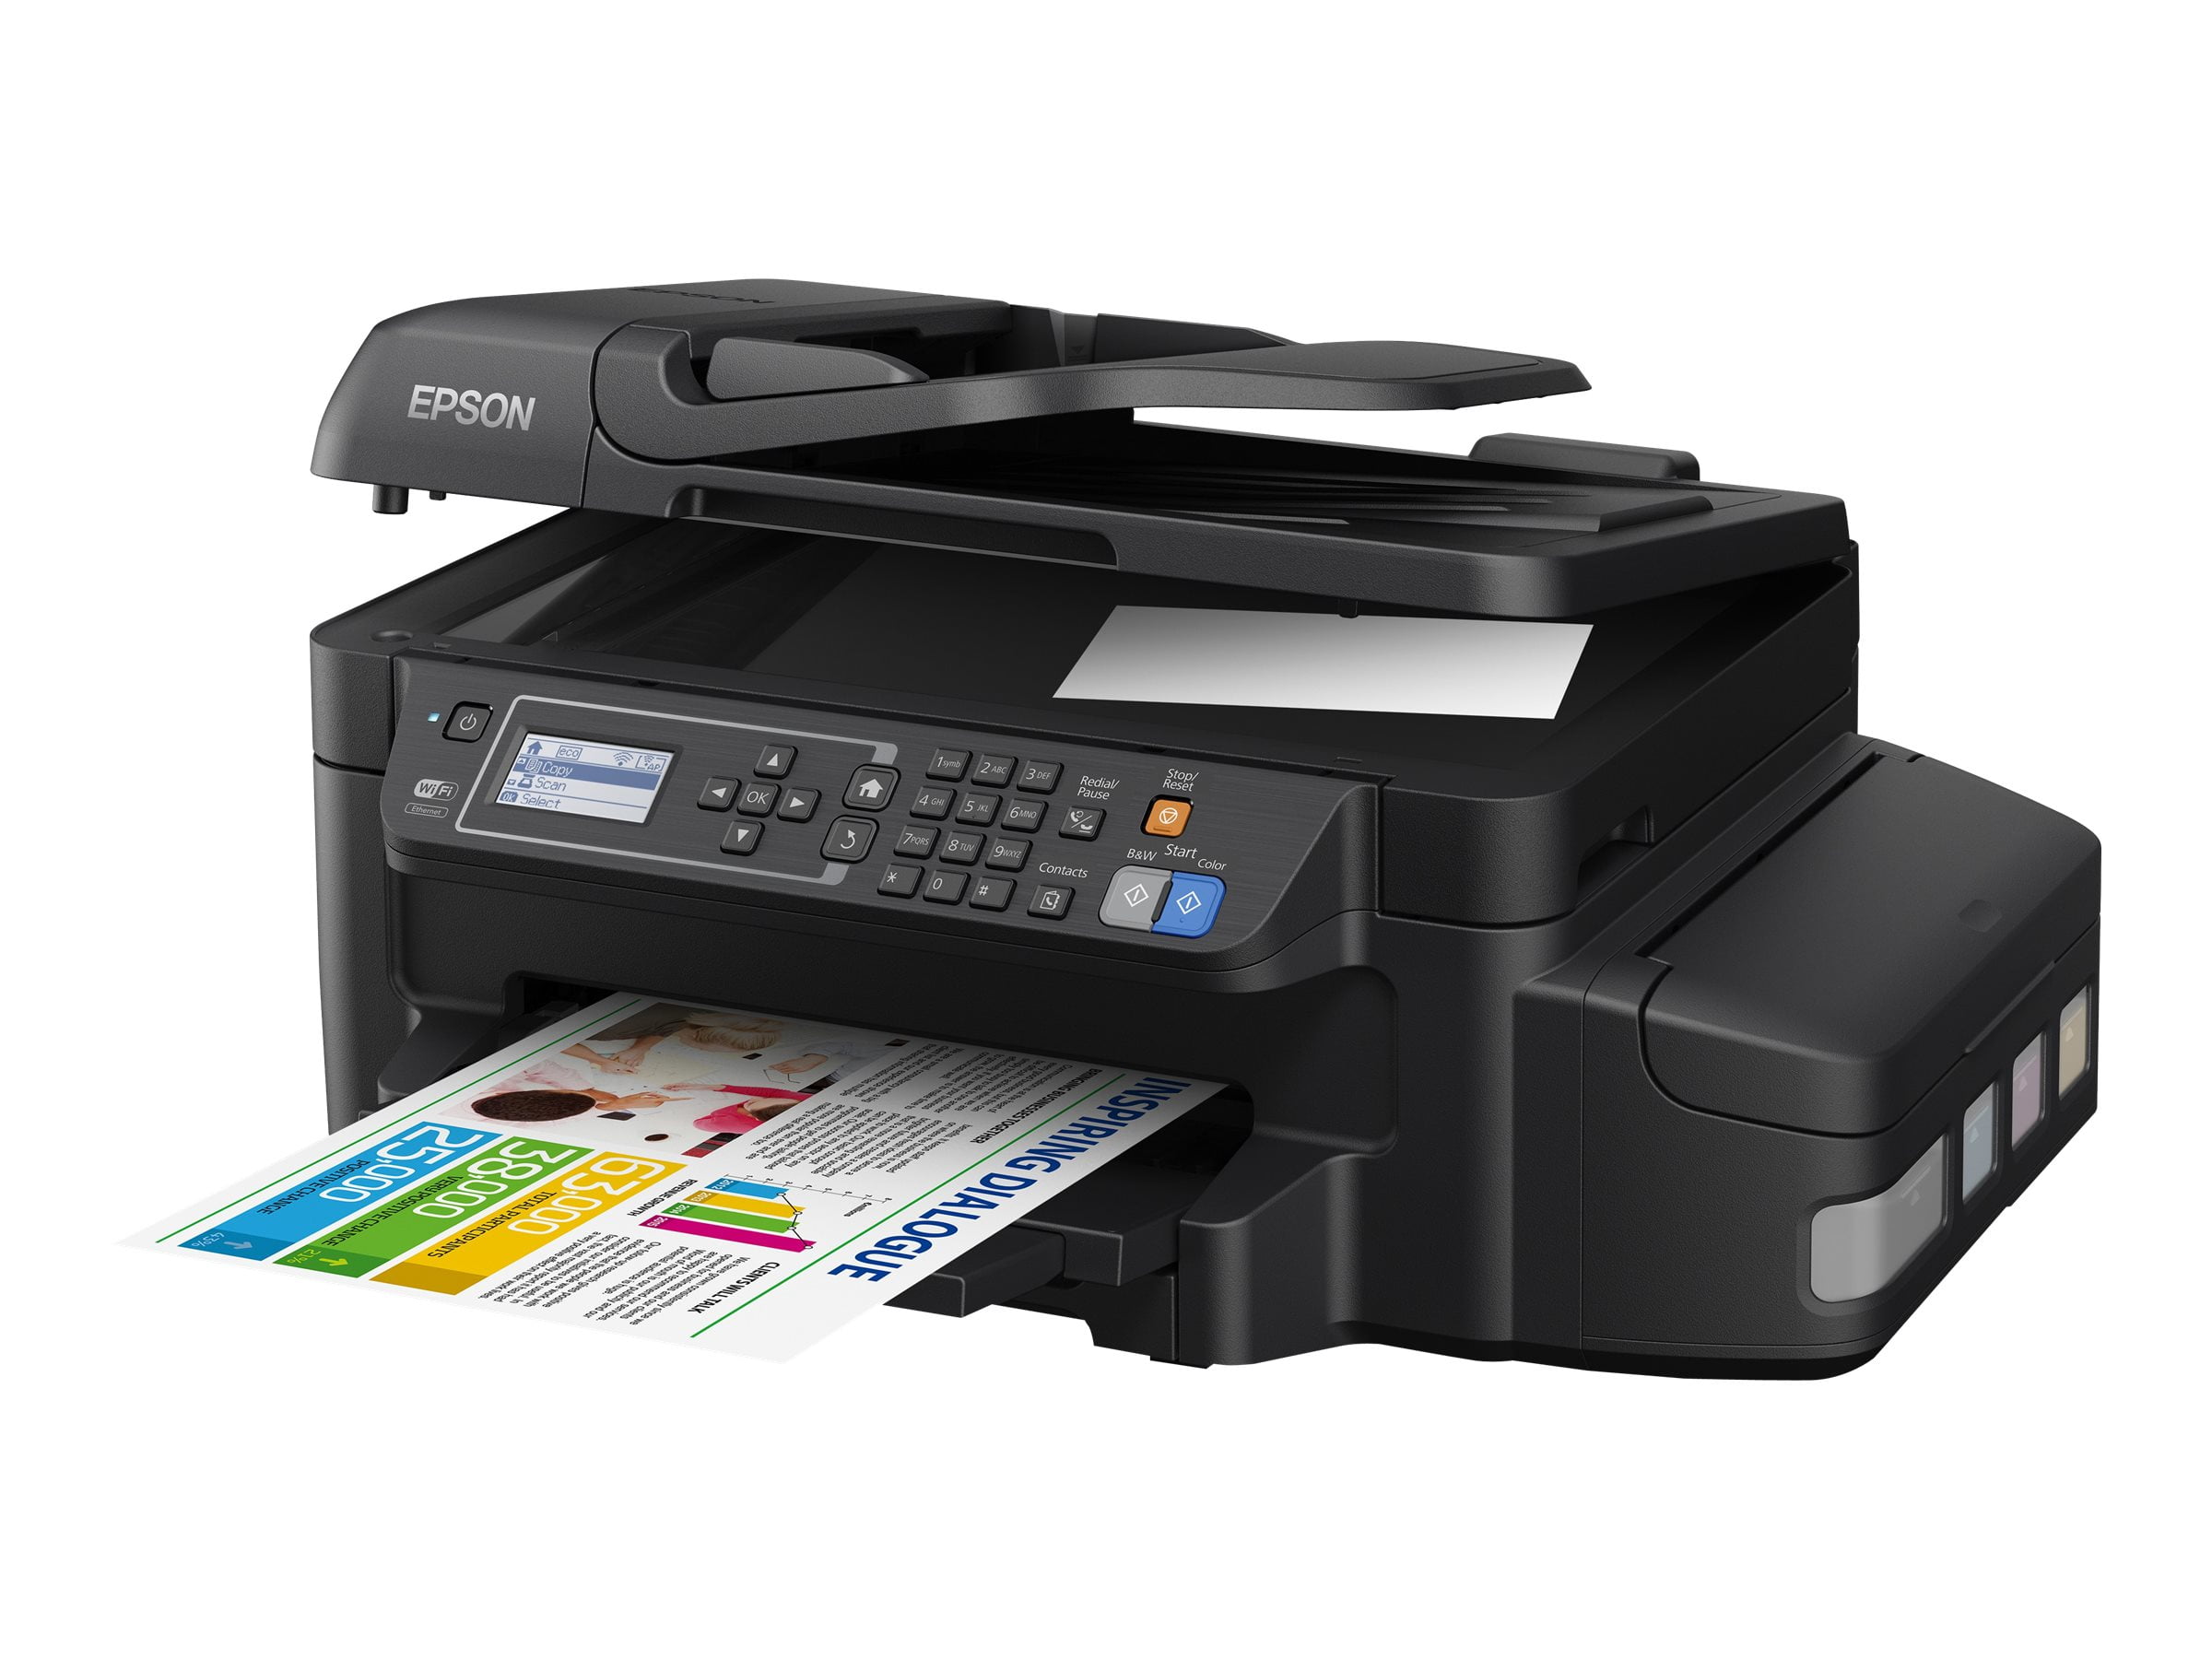 Принтер для распечатки документов. Принтер Epson l566. Epson ECOTANK et-4550. Принтер Epson l605. Epson 566.